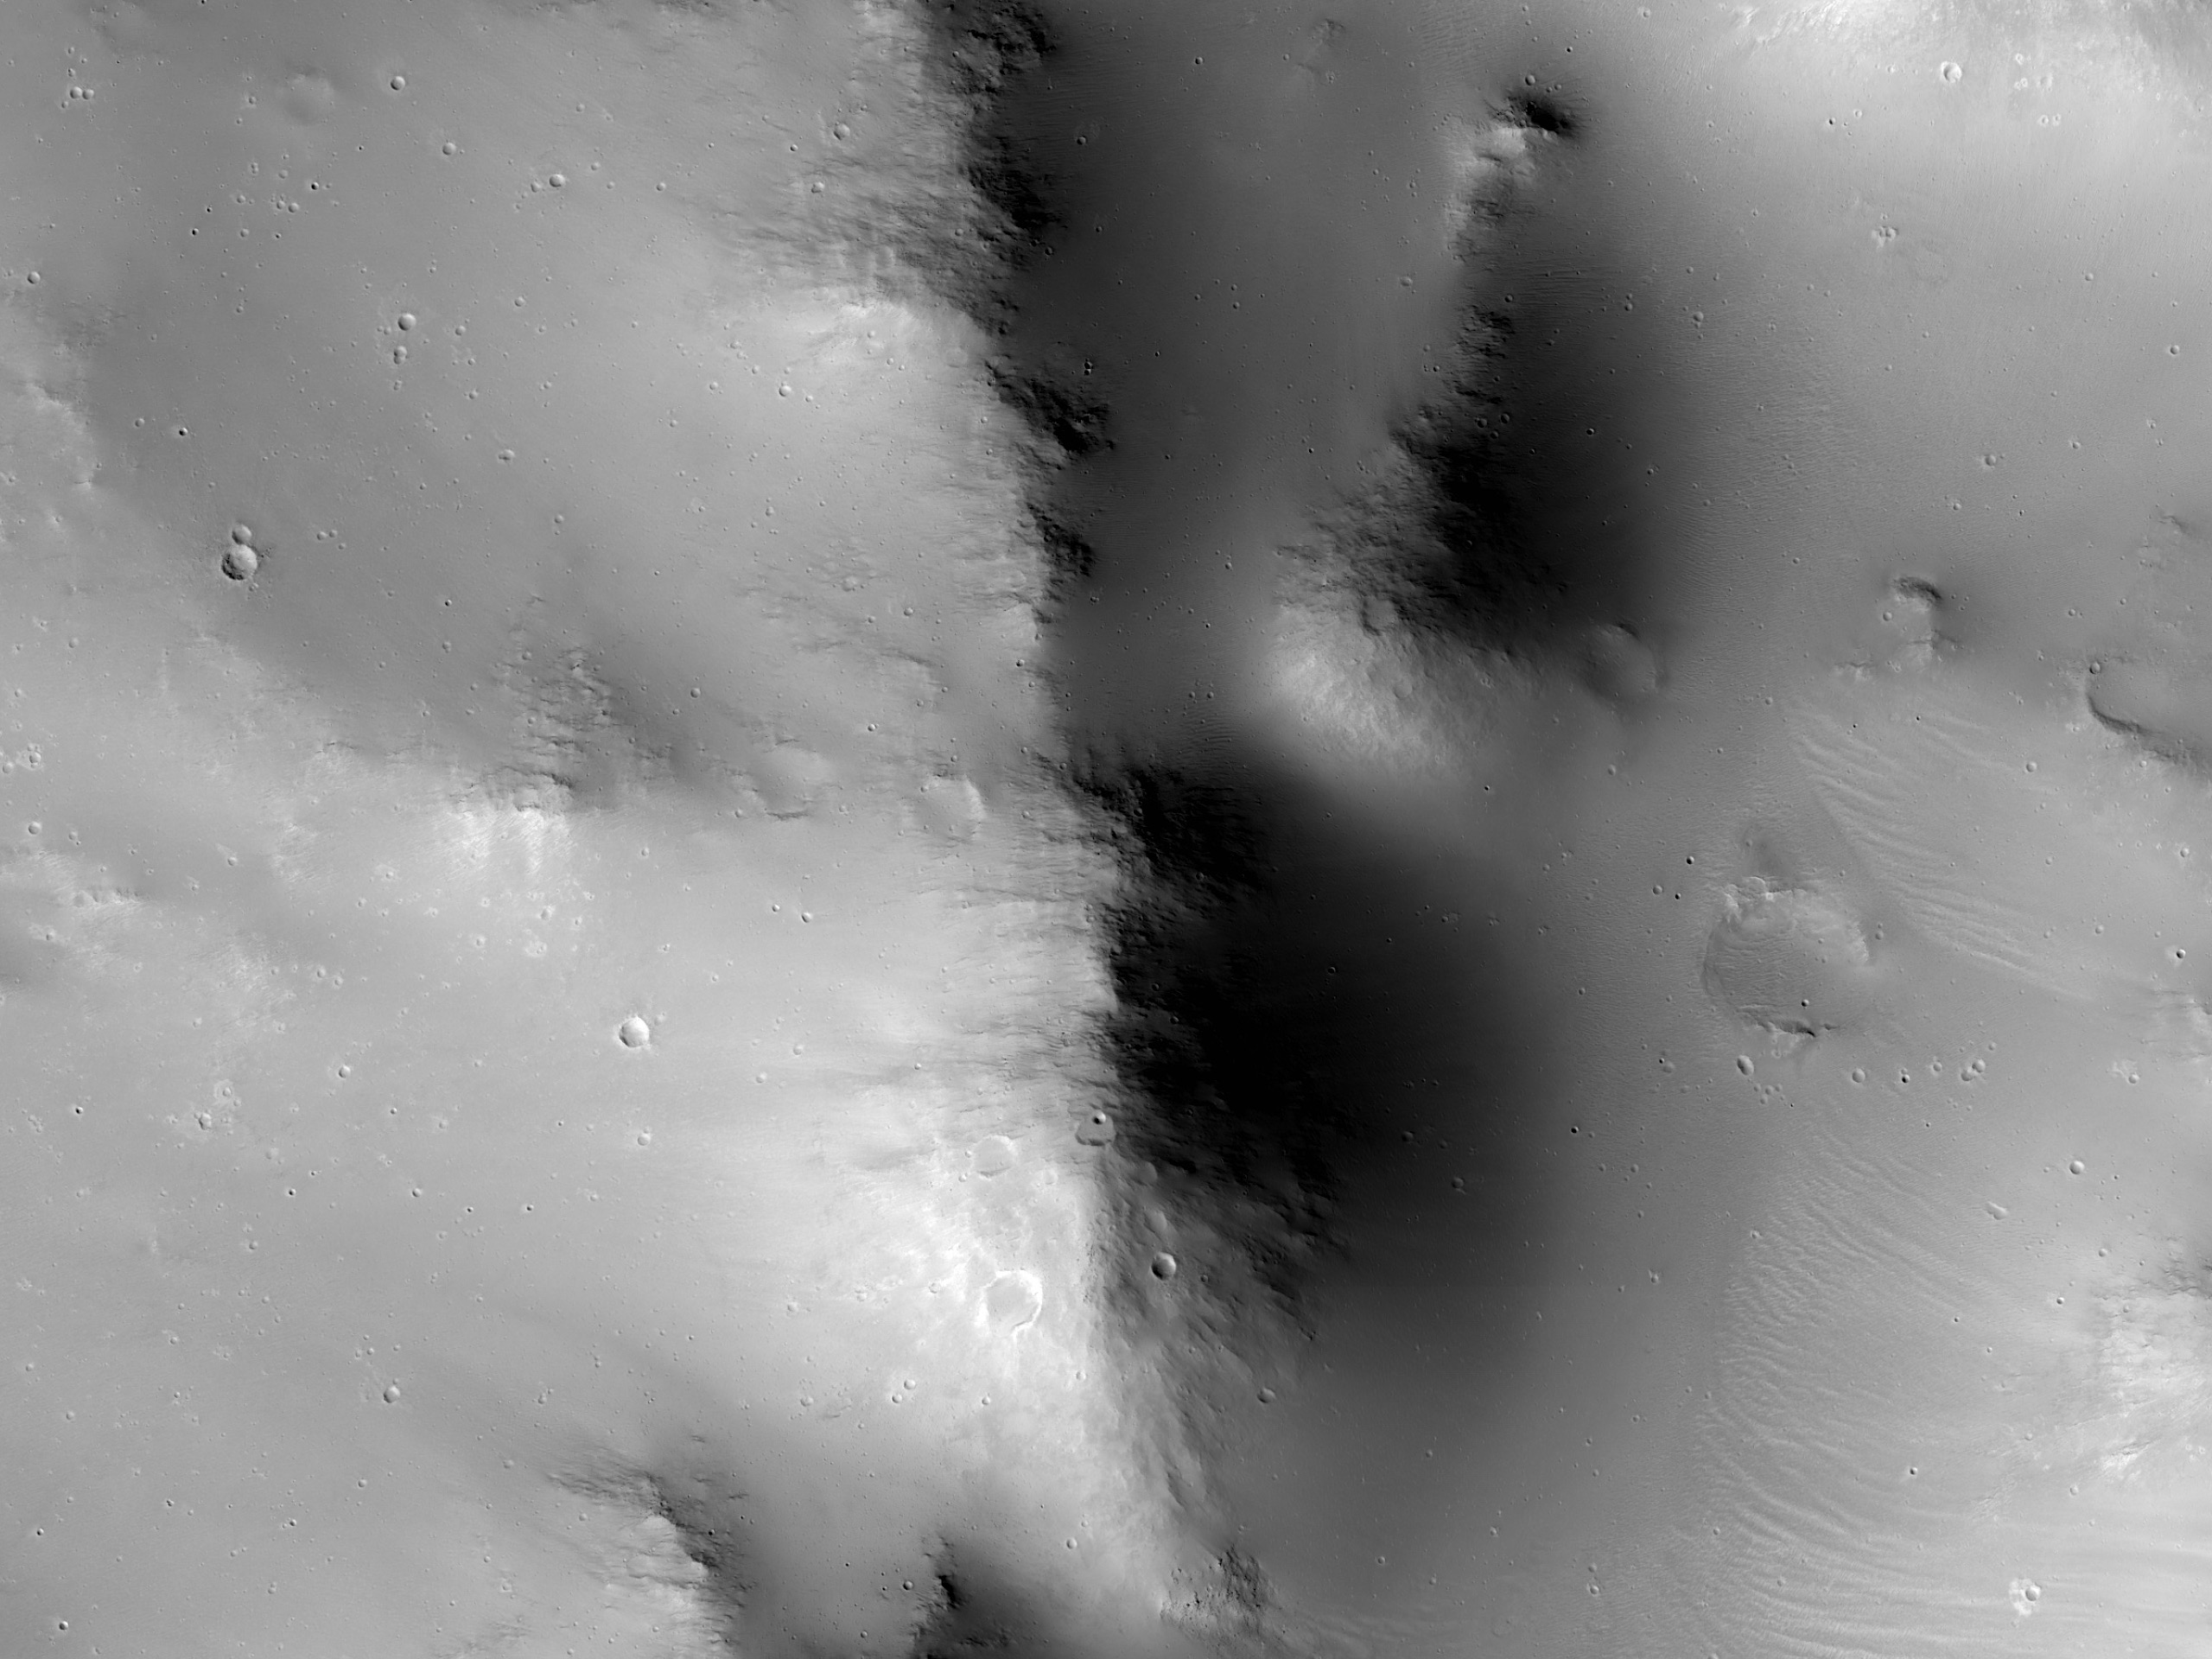 Kanten av et stort nedslitt krater